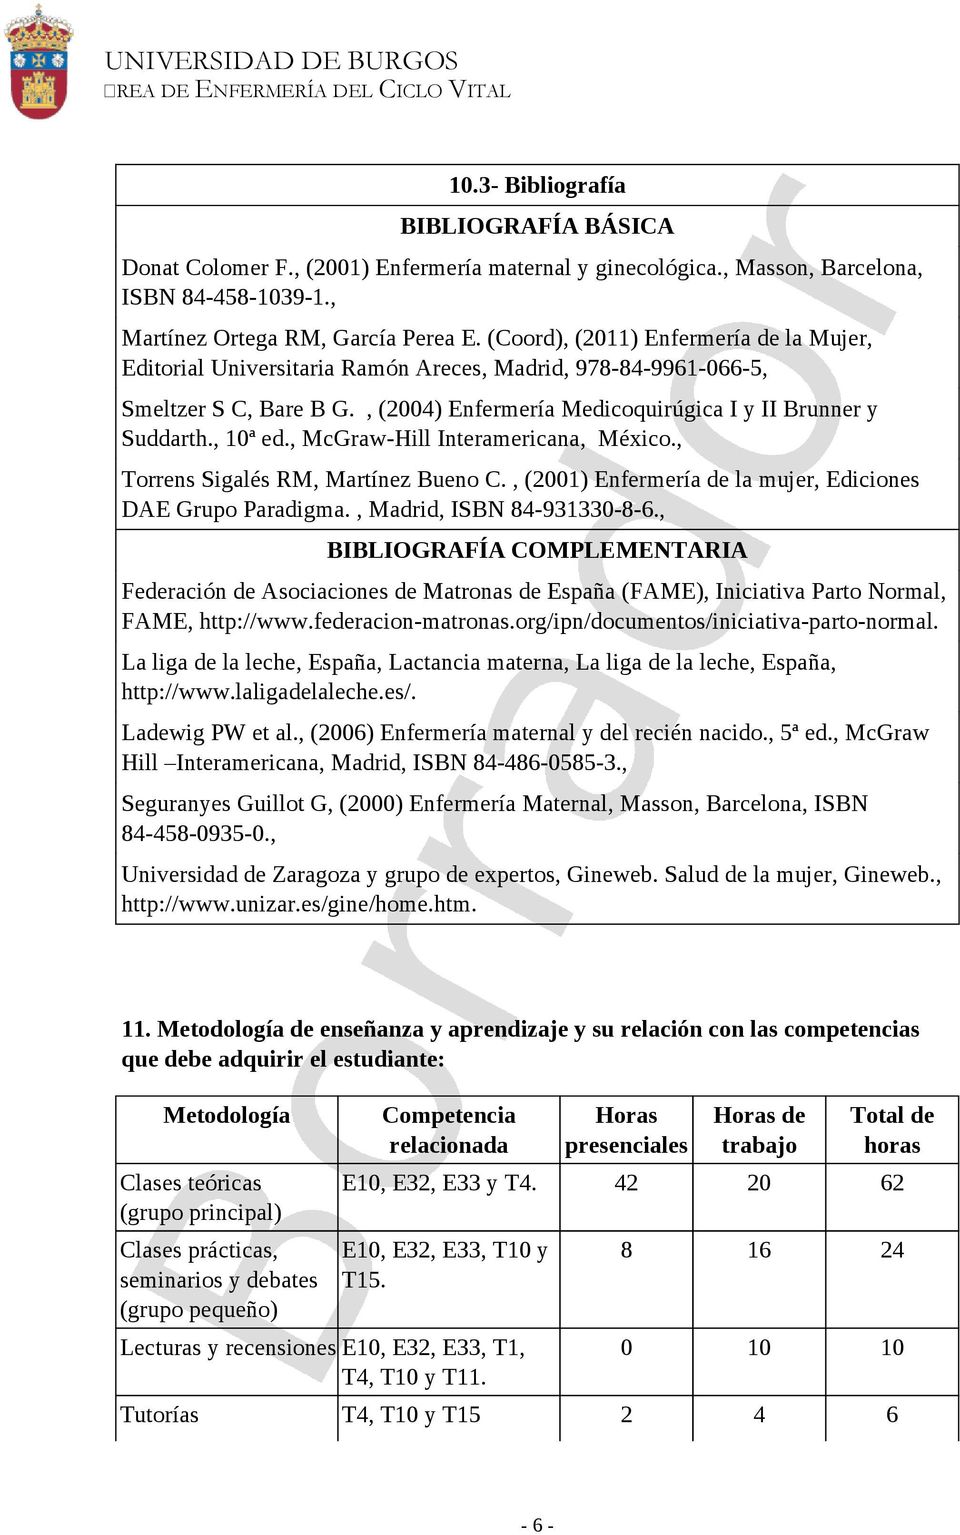 , McGraw-Hill Interamericana, México., Torrens Sigalés RM, Martínez Bueno C., (2001) Enfermería de la mujer, Ediciones DAE Grupo Paradigma., Madrid, ISBN 84-931330-8-6.